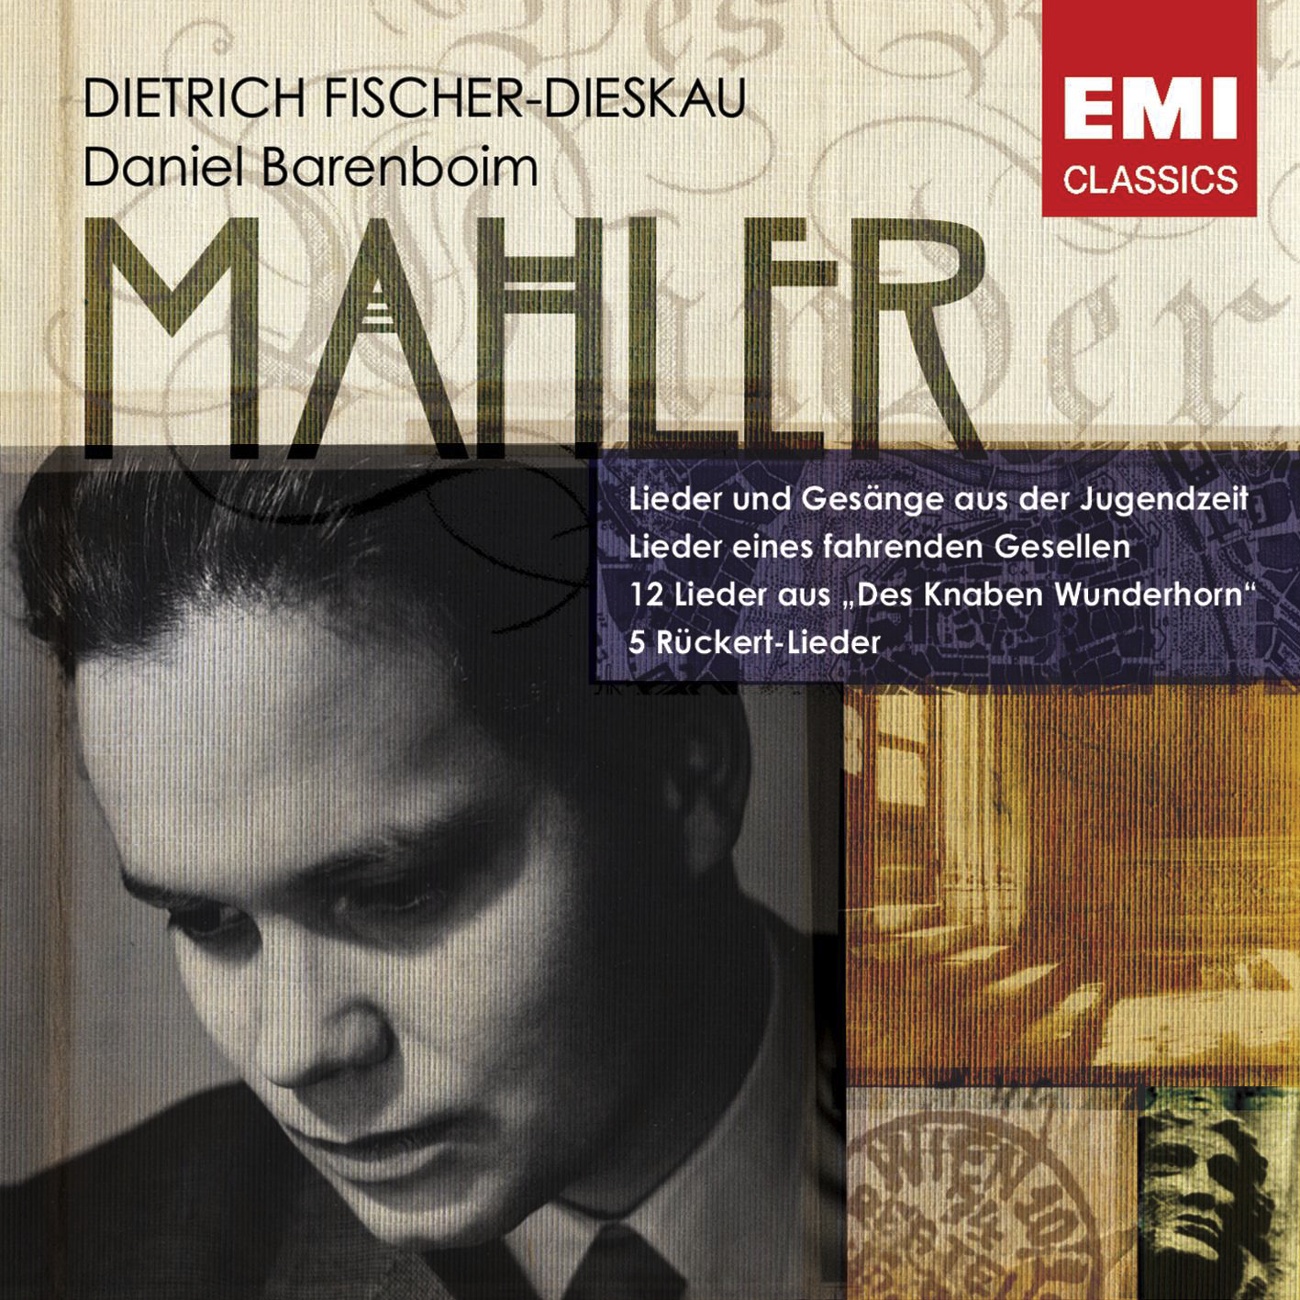 Lieder eines fahrenden Gesellen (Mahler) (2005 Digital Remaster): Wenn mein Schatz Hochzeit macht